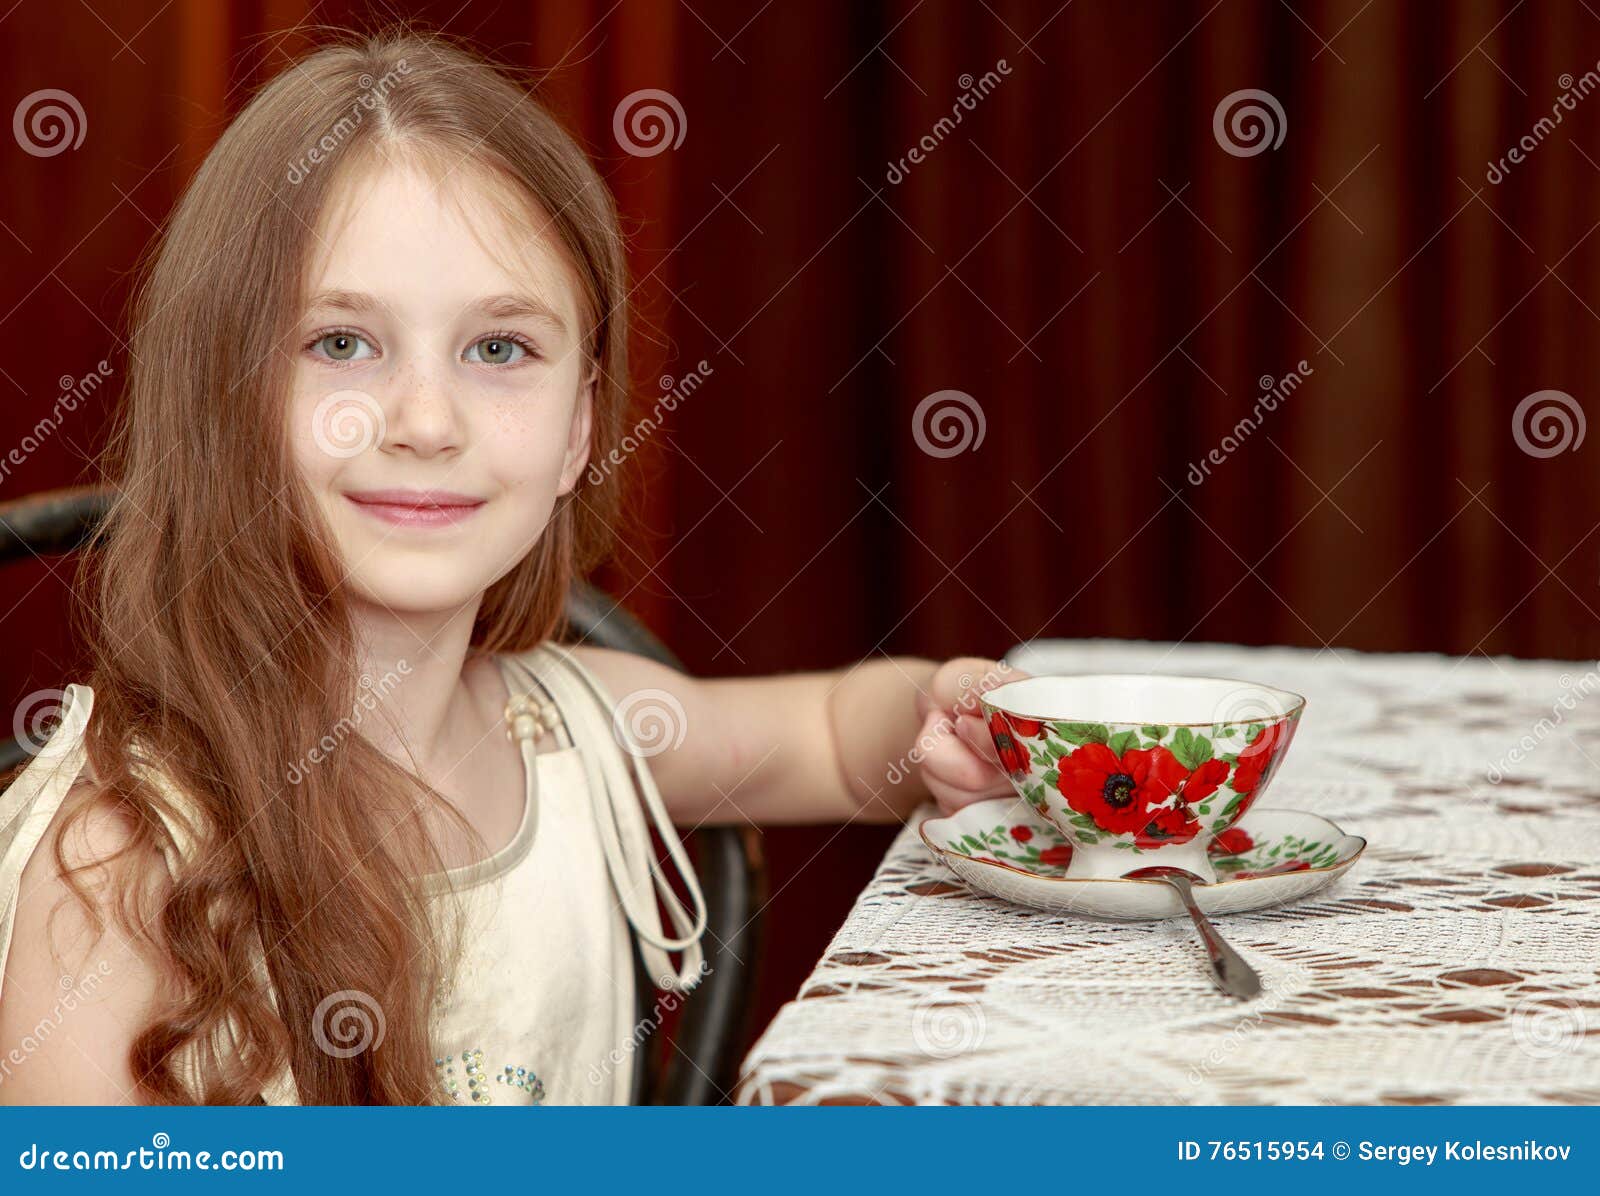 Картинка девочка пьет чай для детей